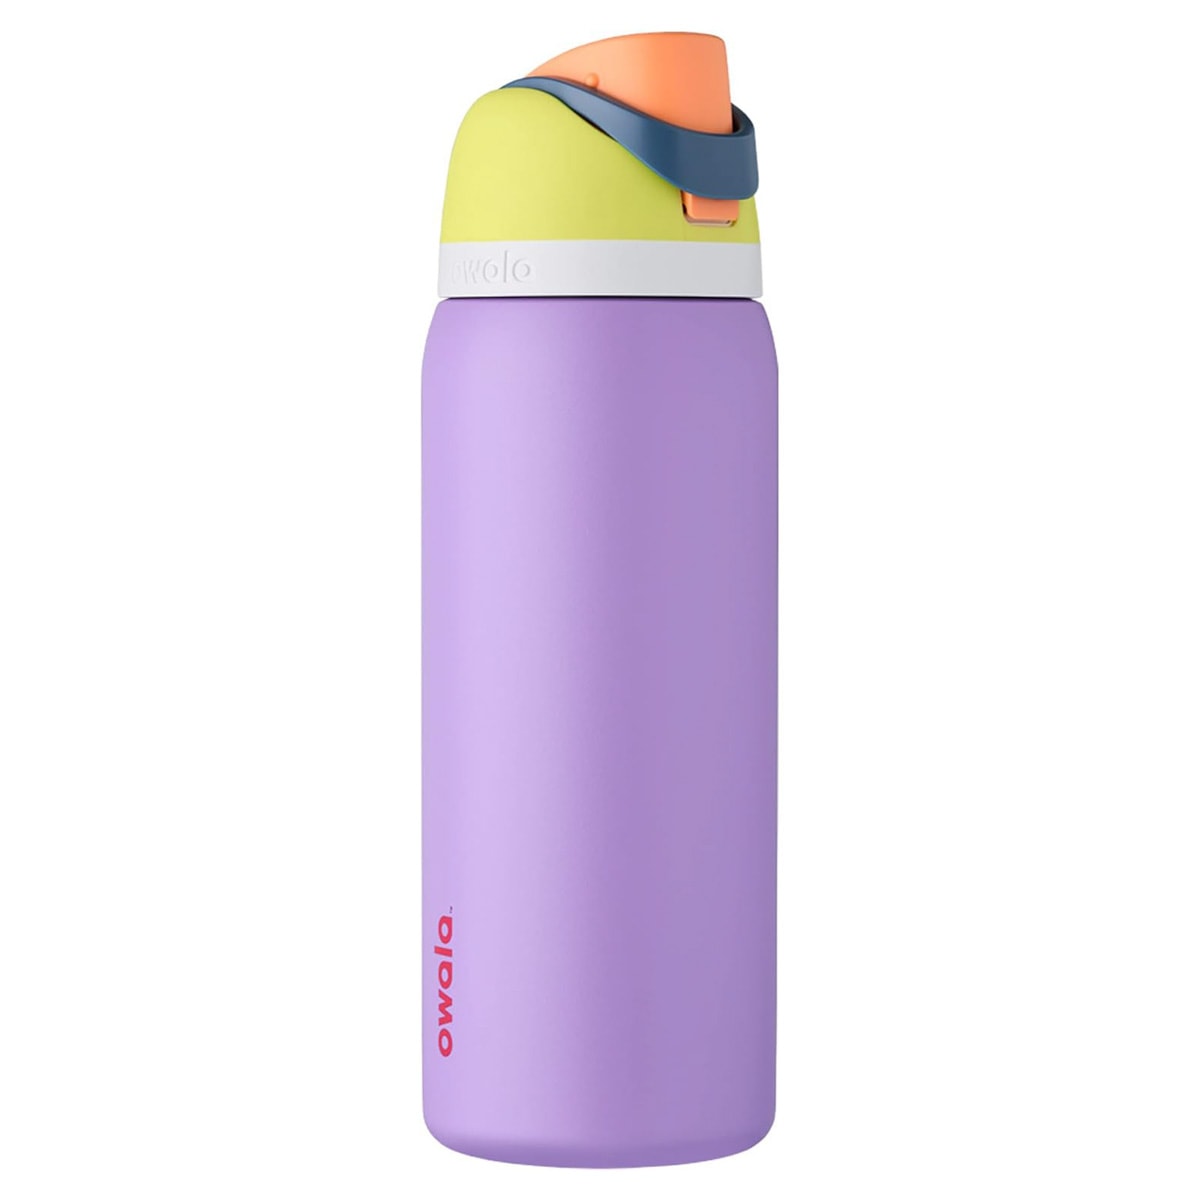 Multicolor Owala water bottle.